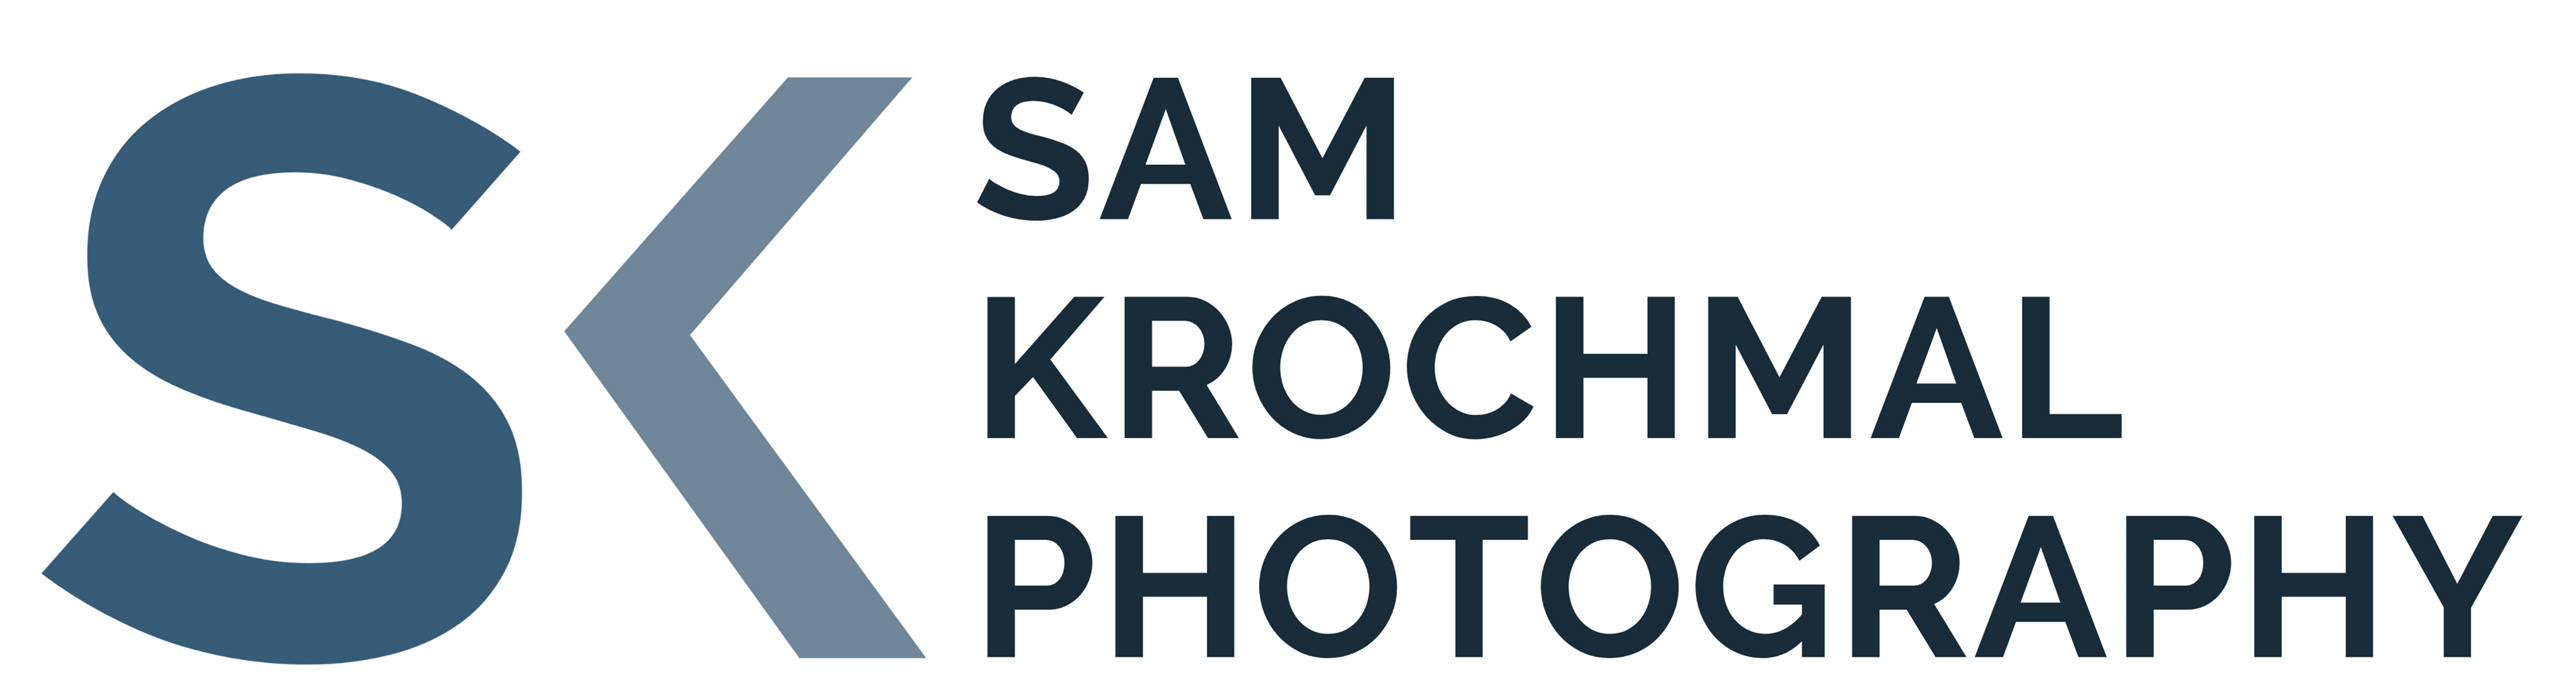 Sam Krochmal